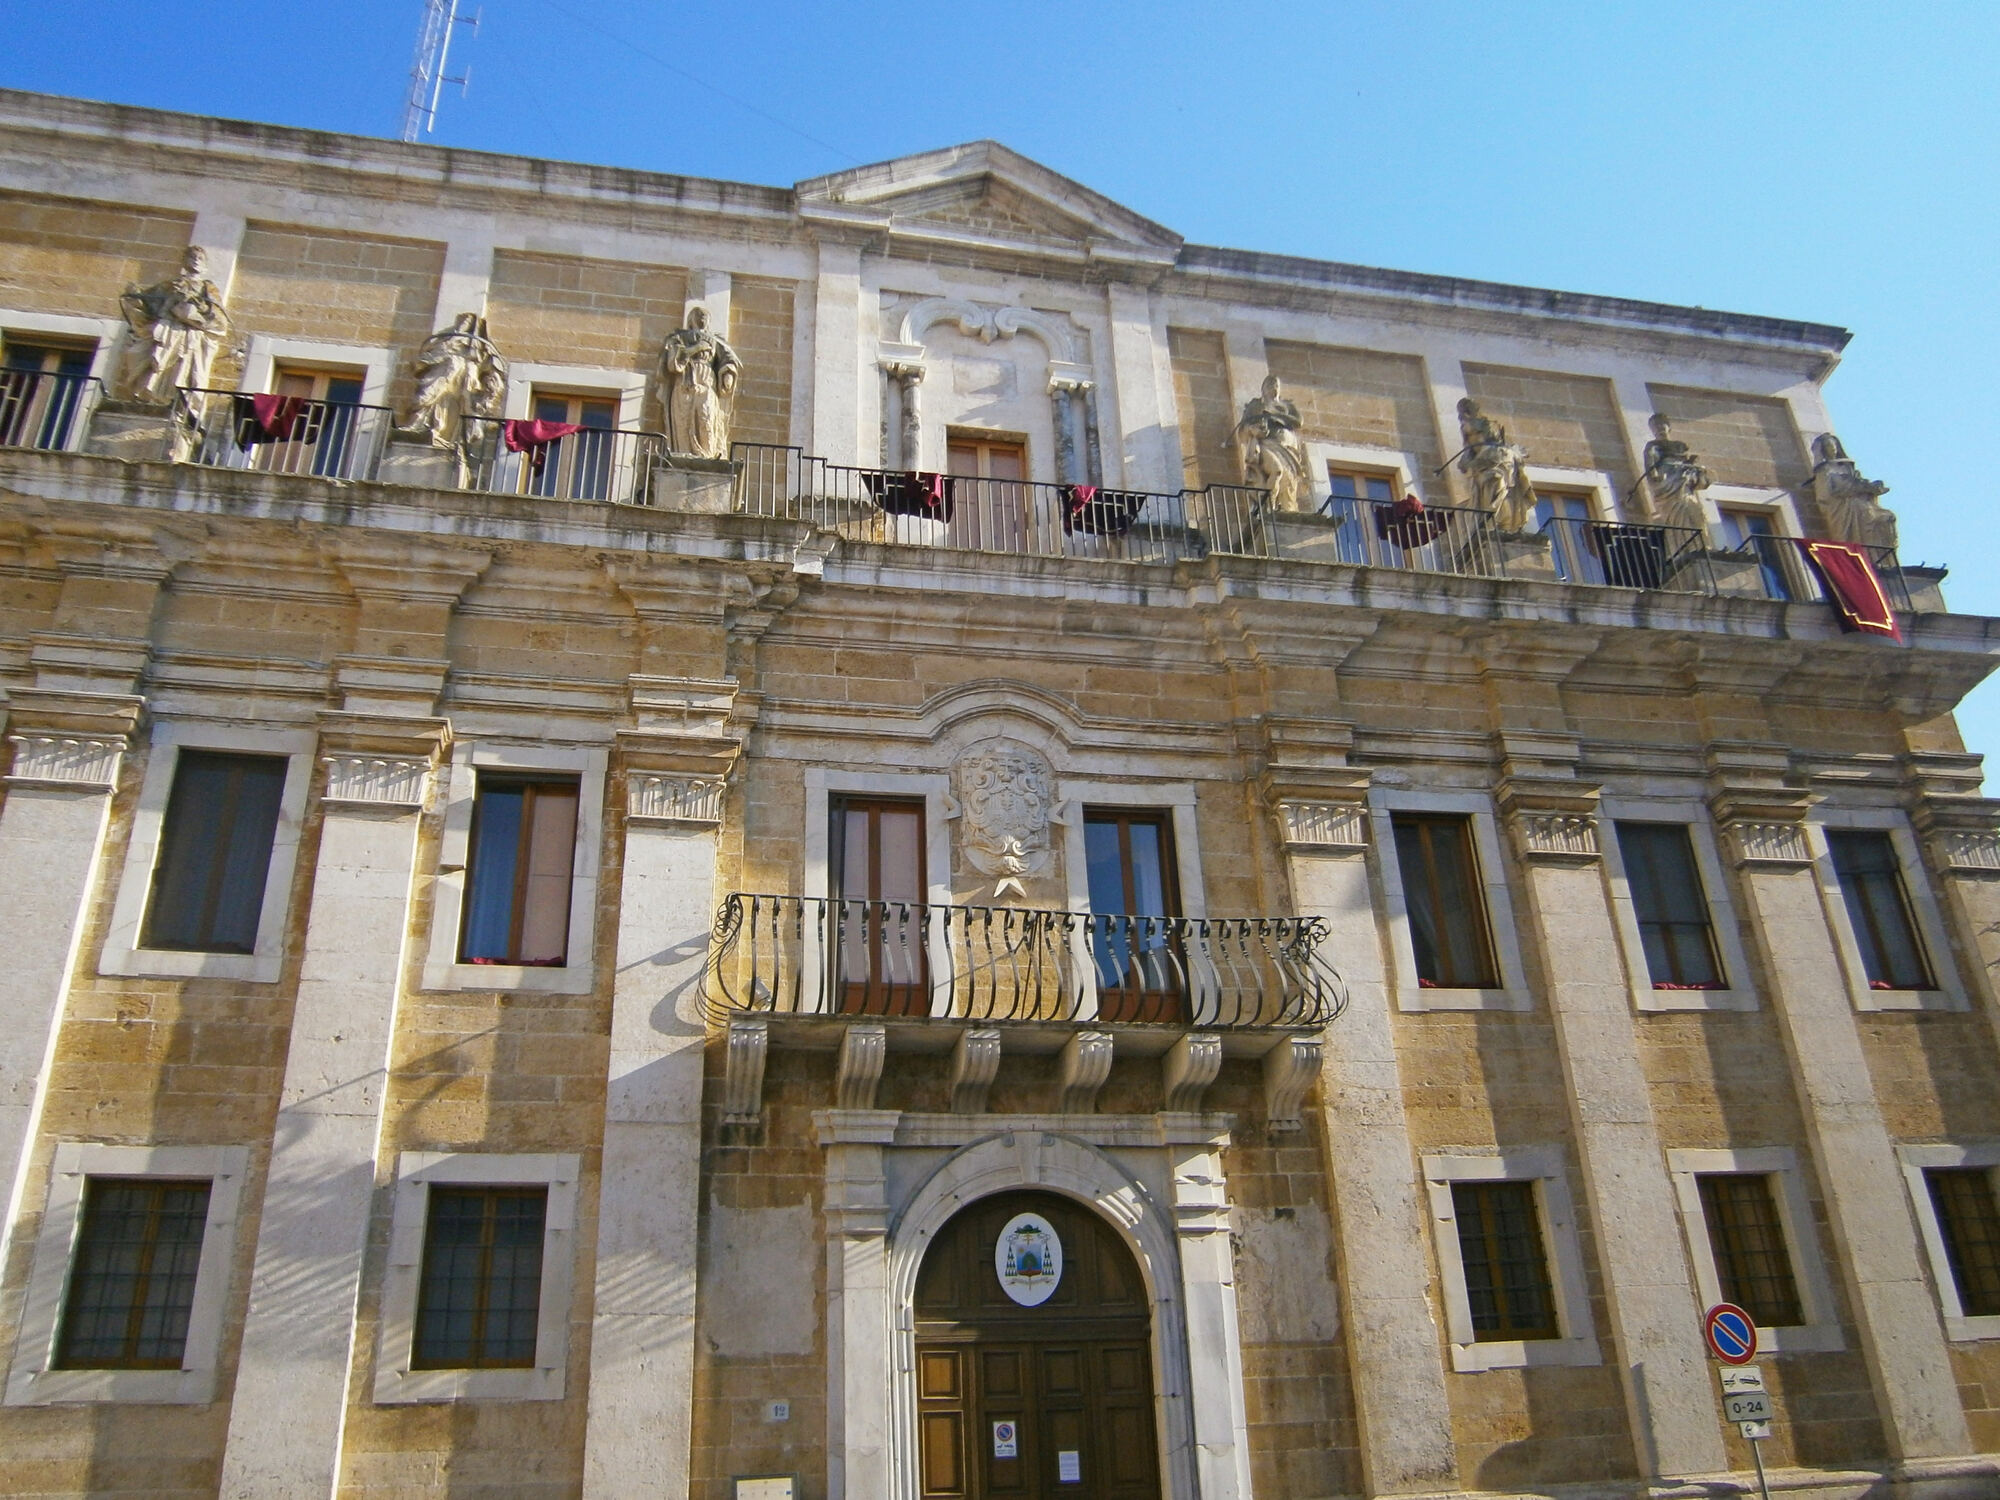 Il Palazzo del Seminario è un importante monumento barocco a Brindisi, con decorazioni provenienti dalla Basilica di San Leucio.